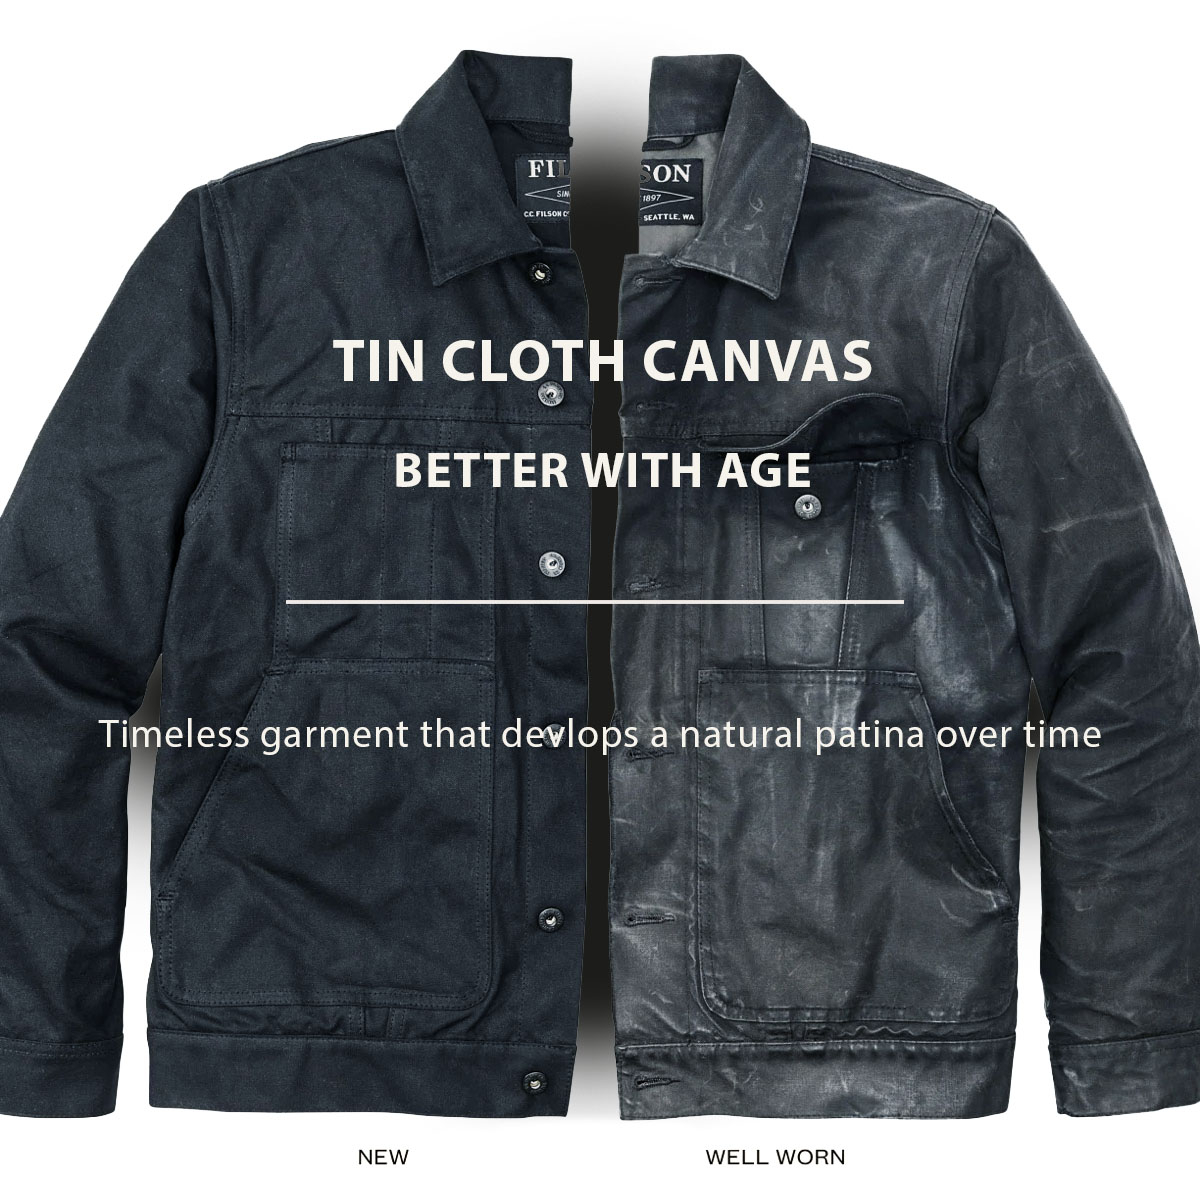 Filson Tin Cloth Short Lined Cruiser Jacket Service Blue, better with age, ein zeitloses Kleidungsstück, das im Laufe der Zeit eine natürliche Patina entwickelt